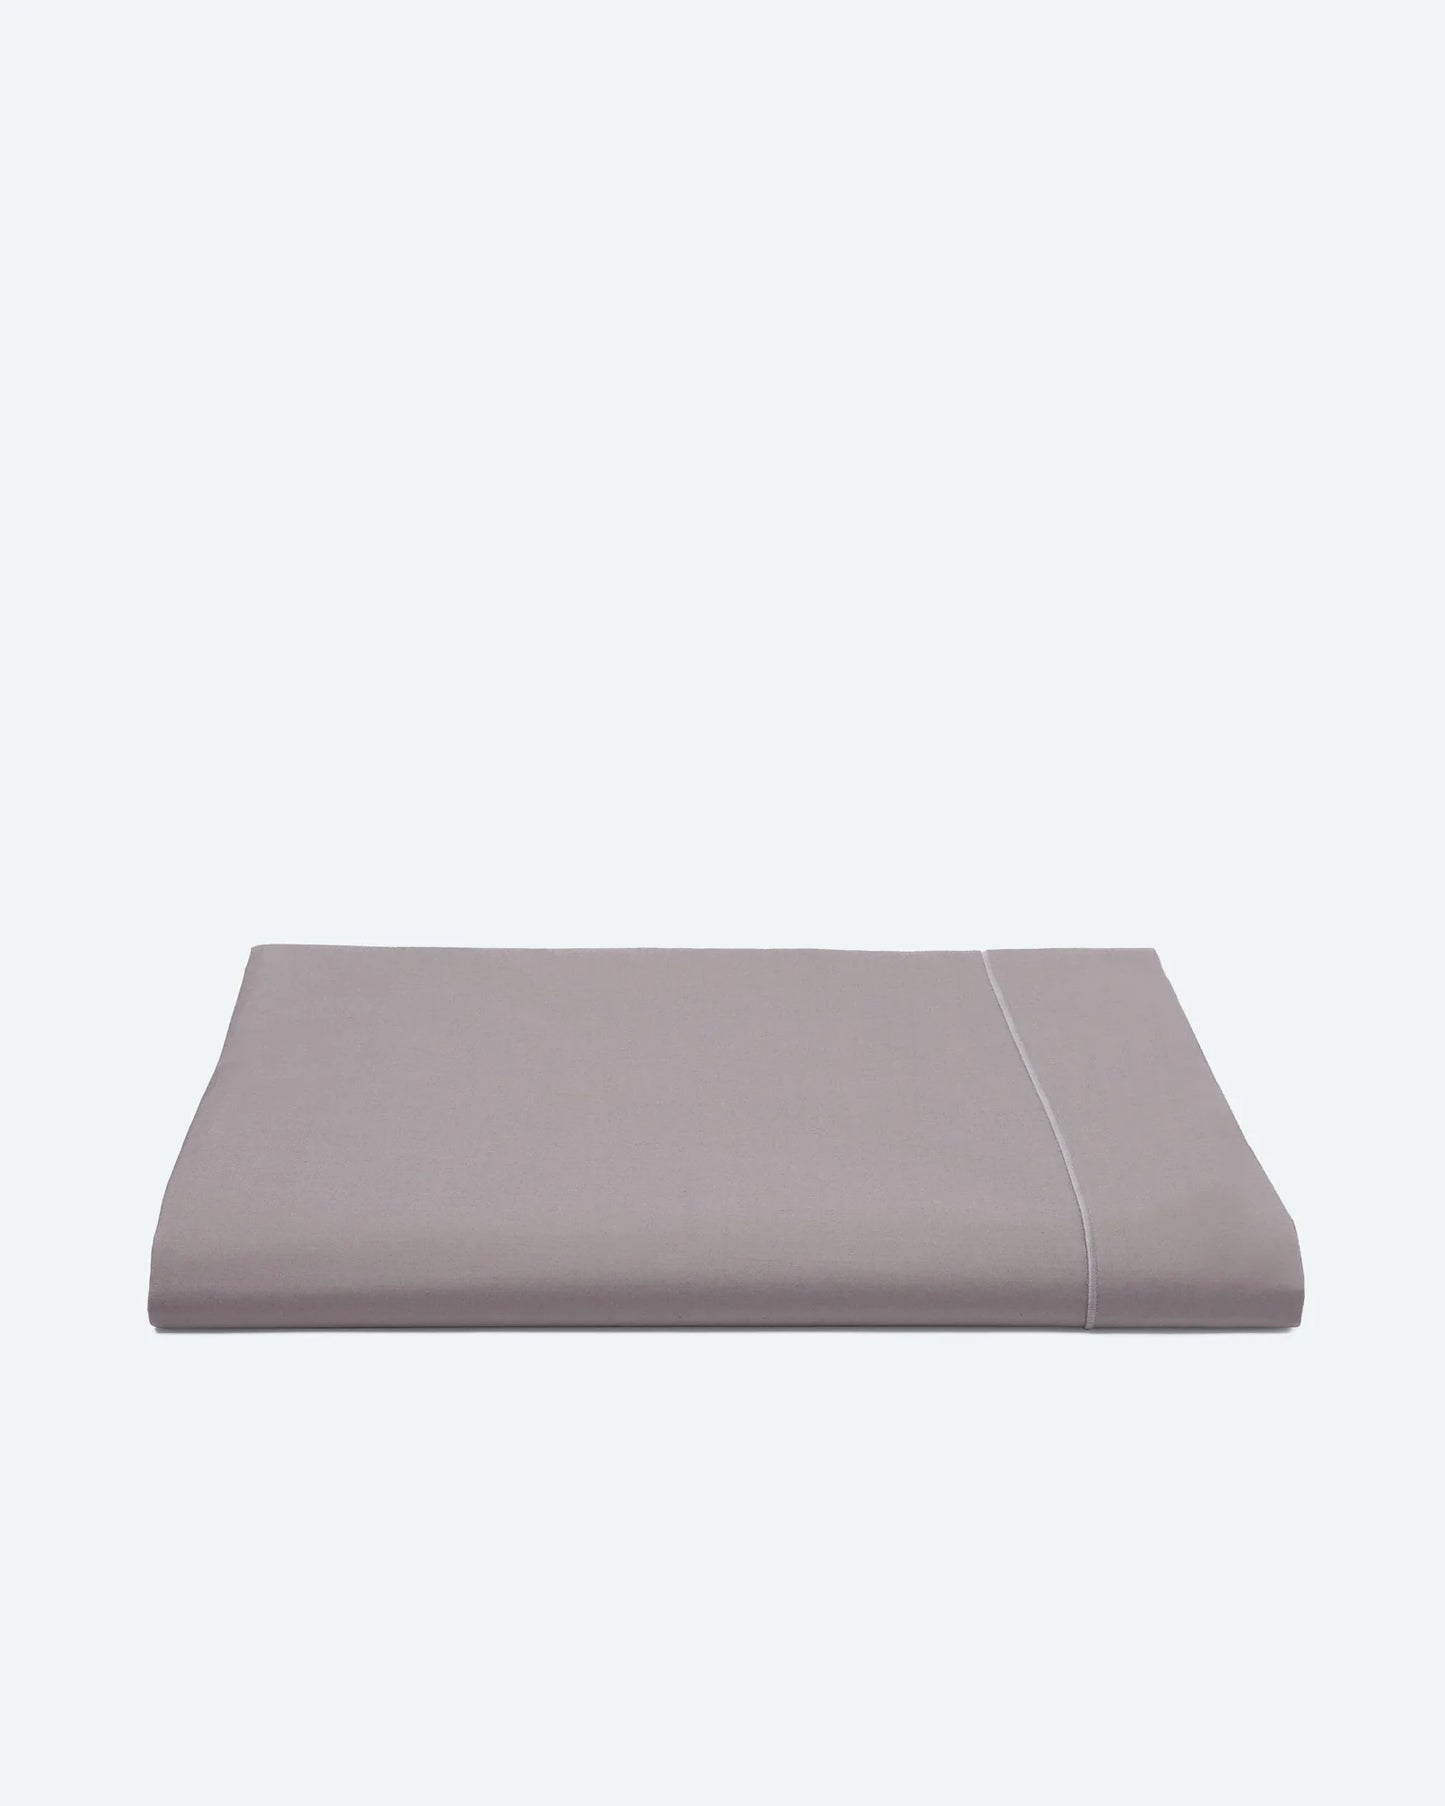 Bedding Set with Sheet Calm Grey Cotton Percale